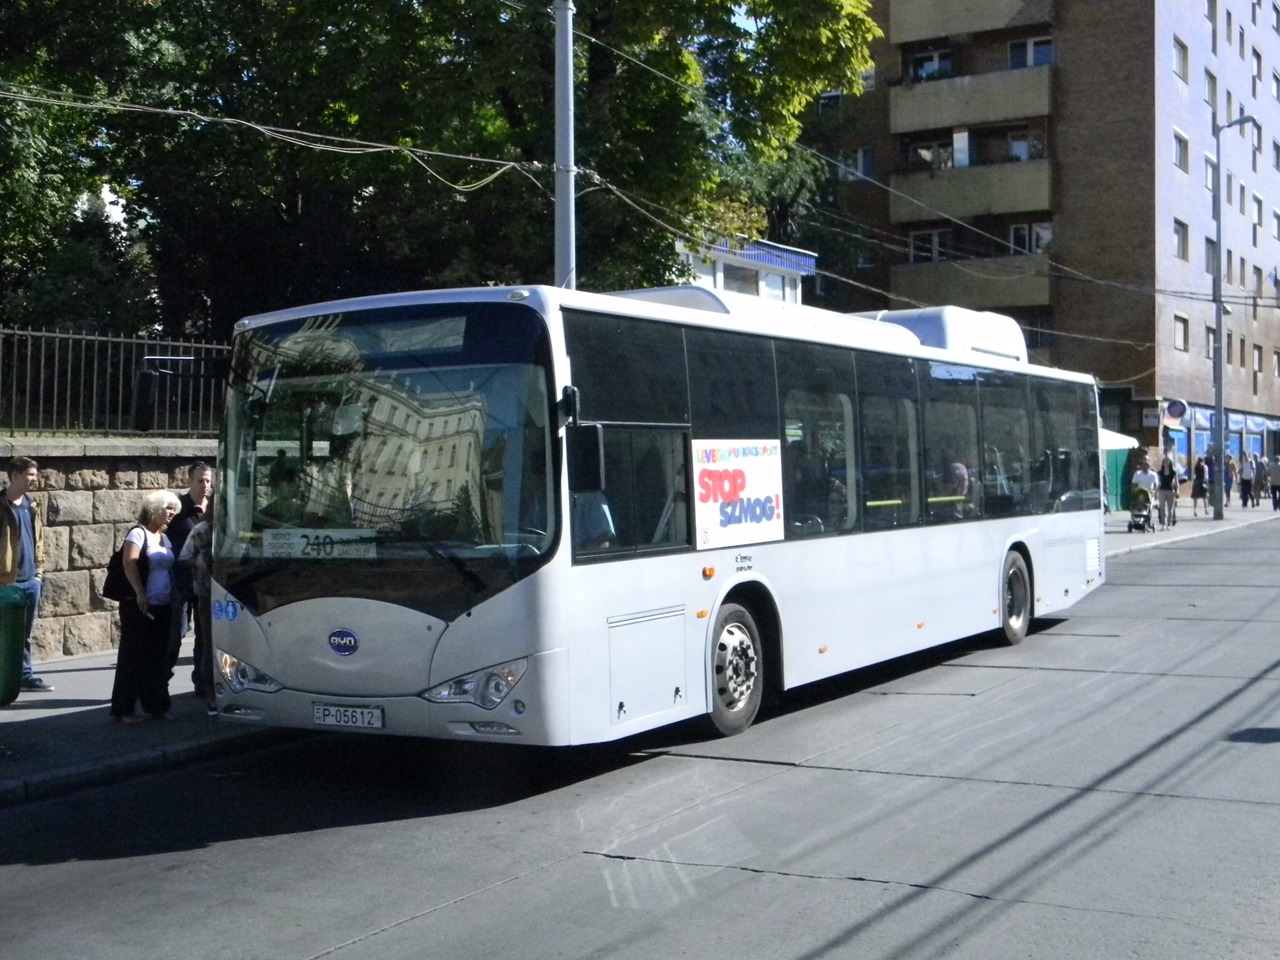 A kínai BYD egyik elektromos buszát 2013-ban a BKV is kipróbálta Budapesten, majd Törökbálinton is tesztelték. T. Hámori Ferenc fotója 2013 szeptemberében a villányi úton, a budaörsi 240-es viszonylat végállomásán készült a zéró emissziós járműről